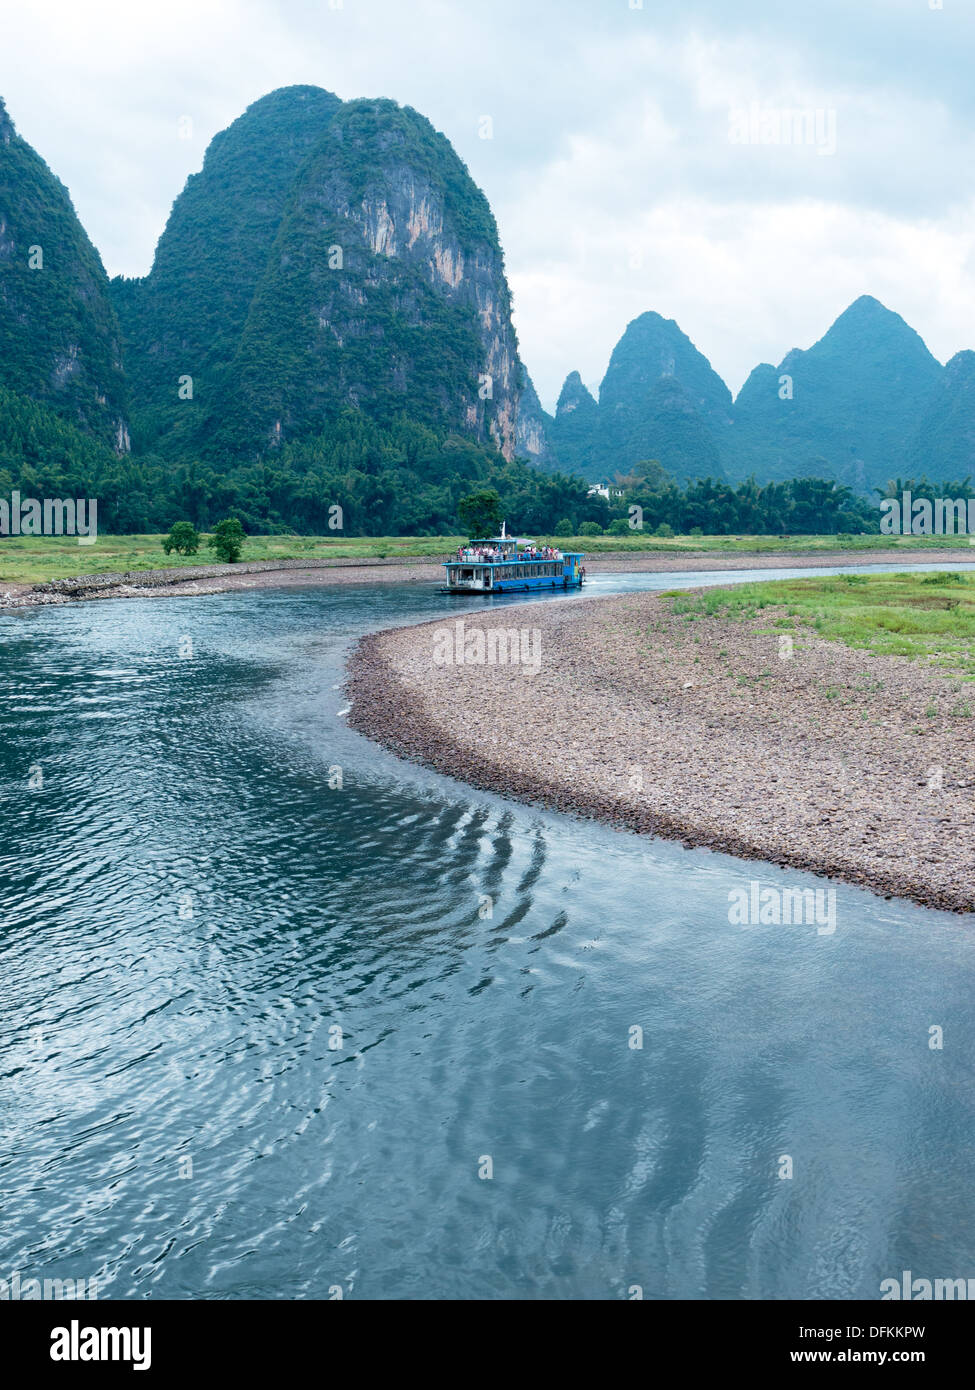 The Lijiang River landscape in Guilin,Guangxi, China Stock Photo